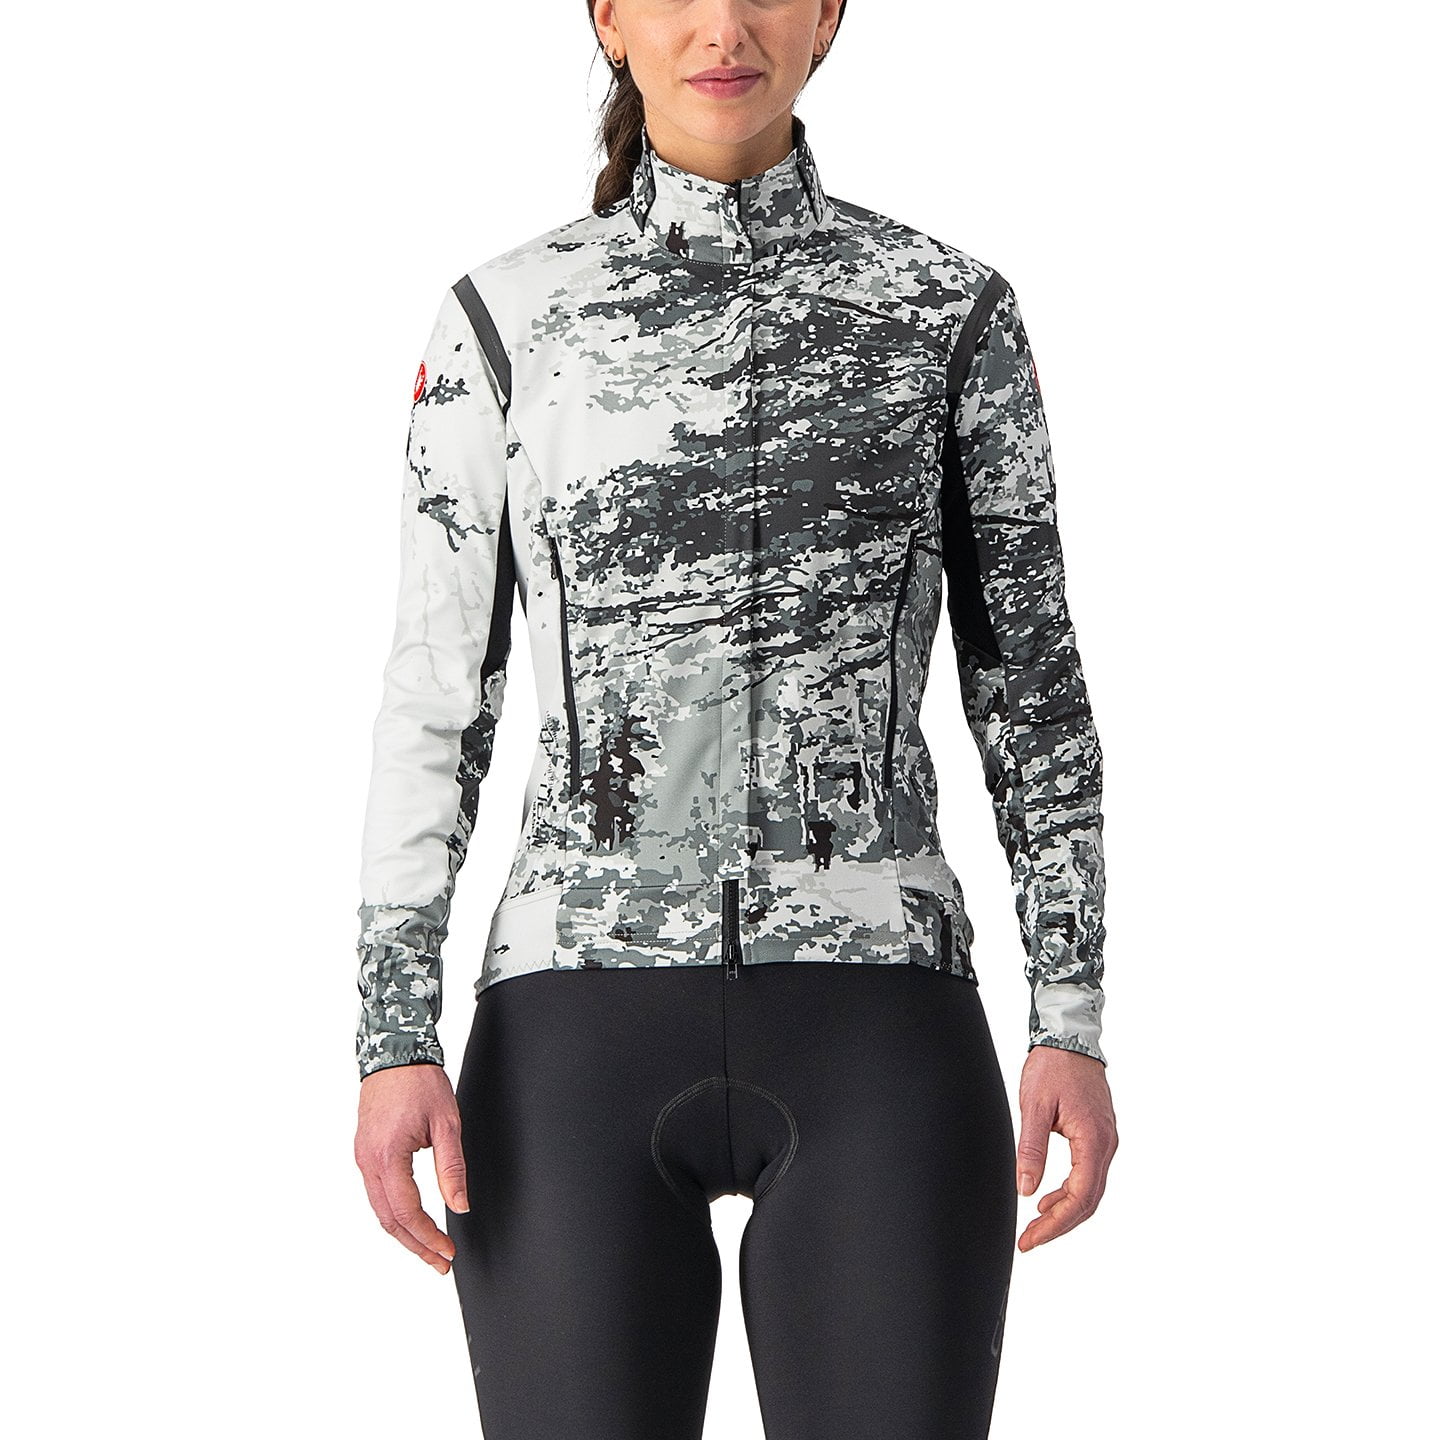 CASTELLI Perfetto RoS Unlimited Edt. Women’s Light Jacket Light Jacket, size M, Bike jacket, Cycling clothing